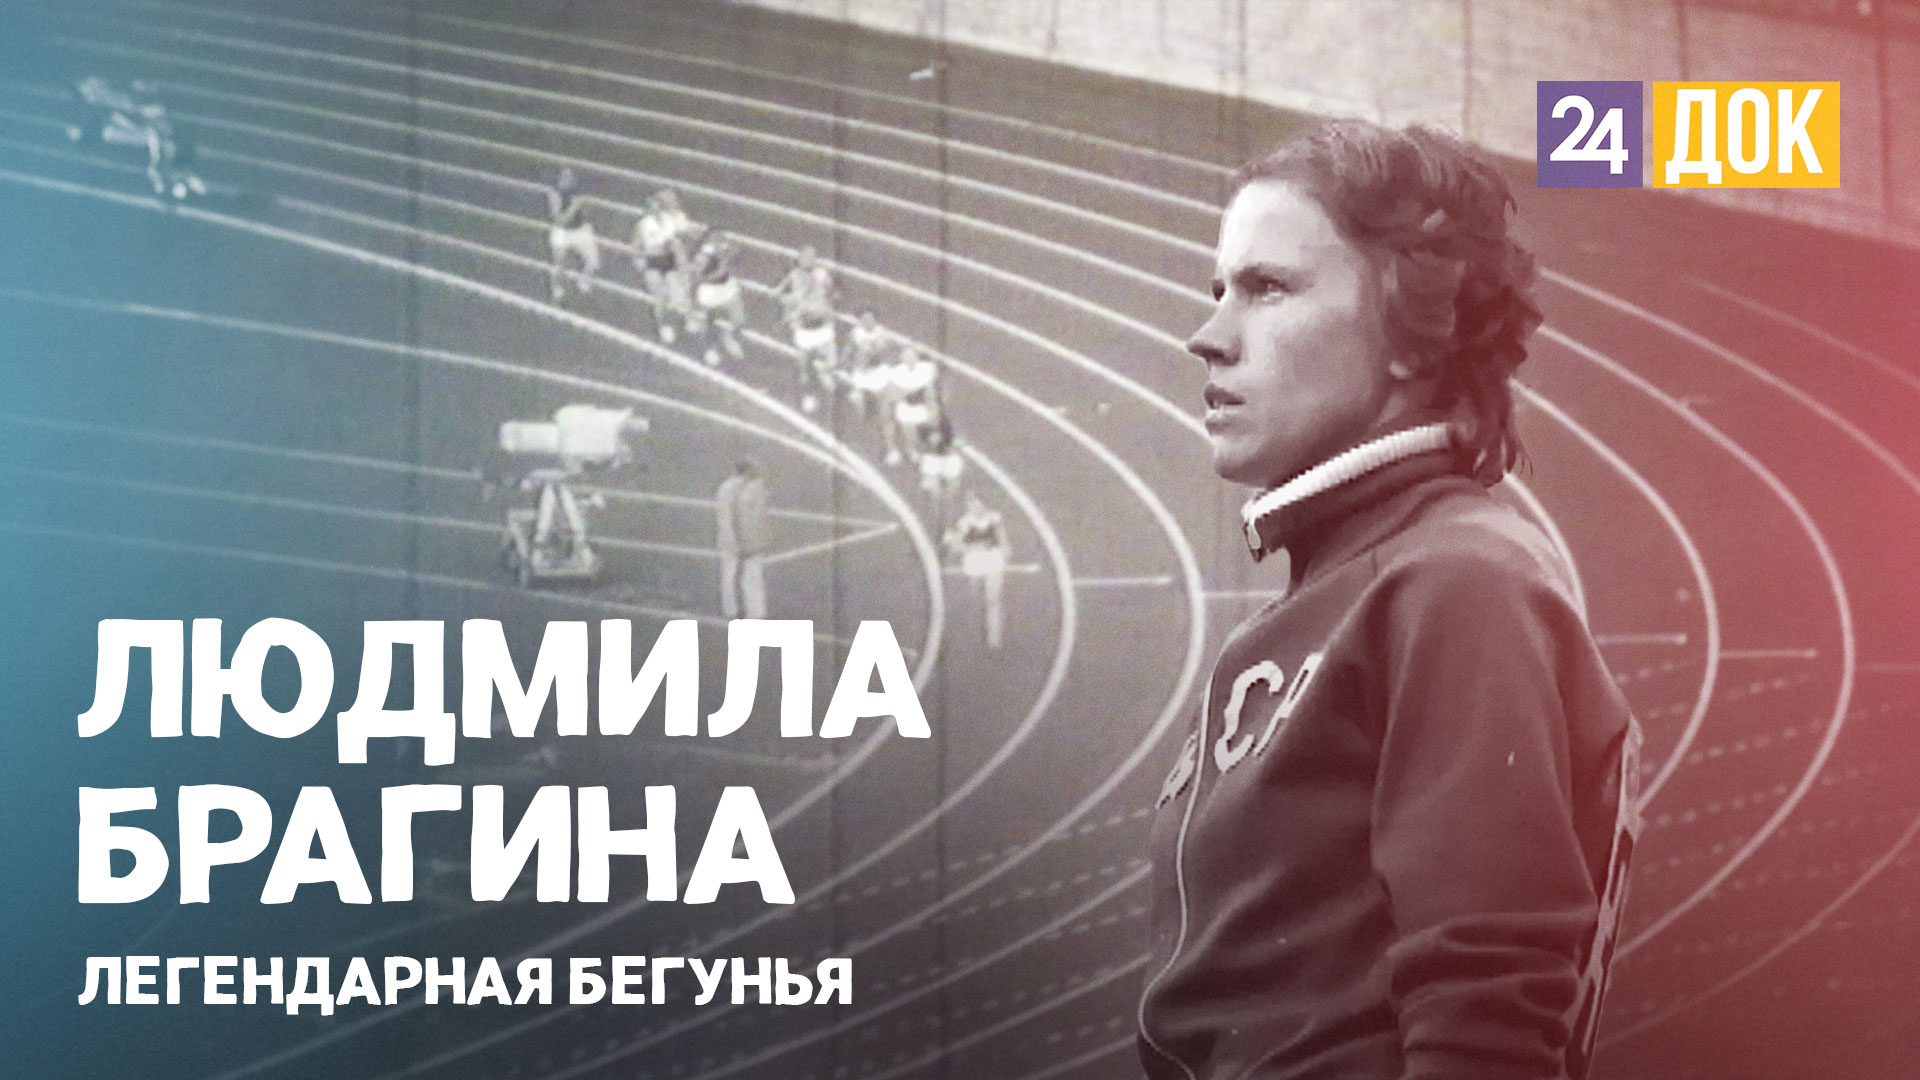 Людмила Брагина, олимпийская чемпионка.  ВОШЛИ В ИСТОРИЮ